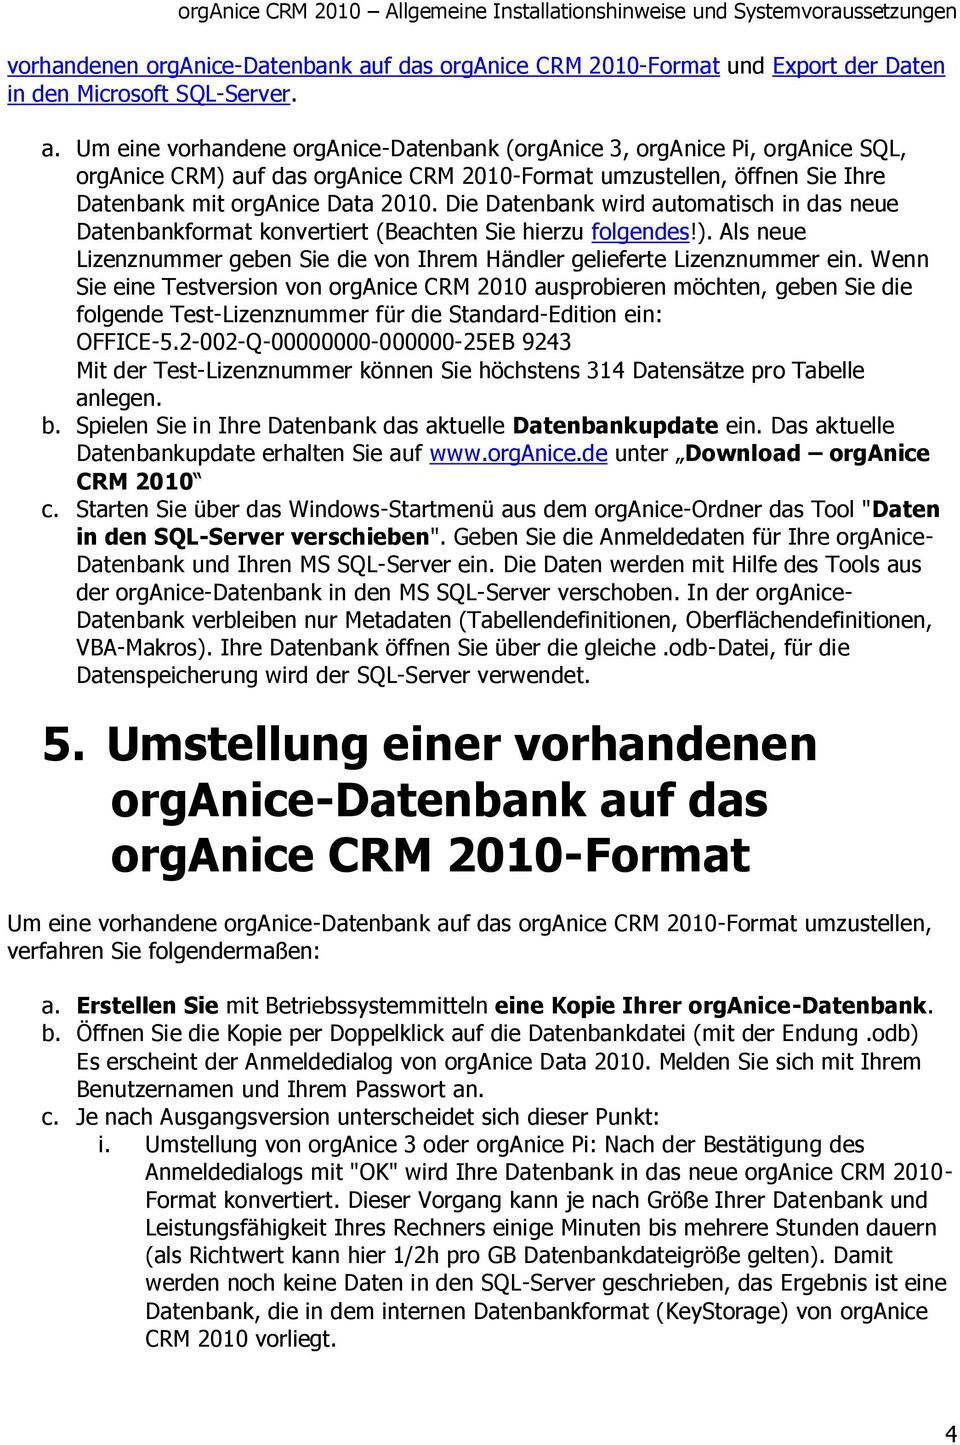 Um eine vorhandene organice-datenbank (organice 3, organice Pi, organice SQL, organice CRM) auf das organice CRM 2010-Format umzustellen, öffnen Sie Ihre Datenbank mit organice Data 2010.